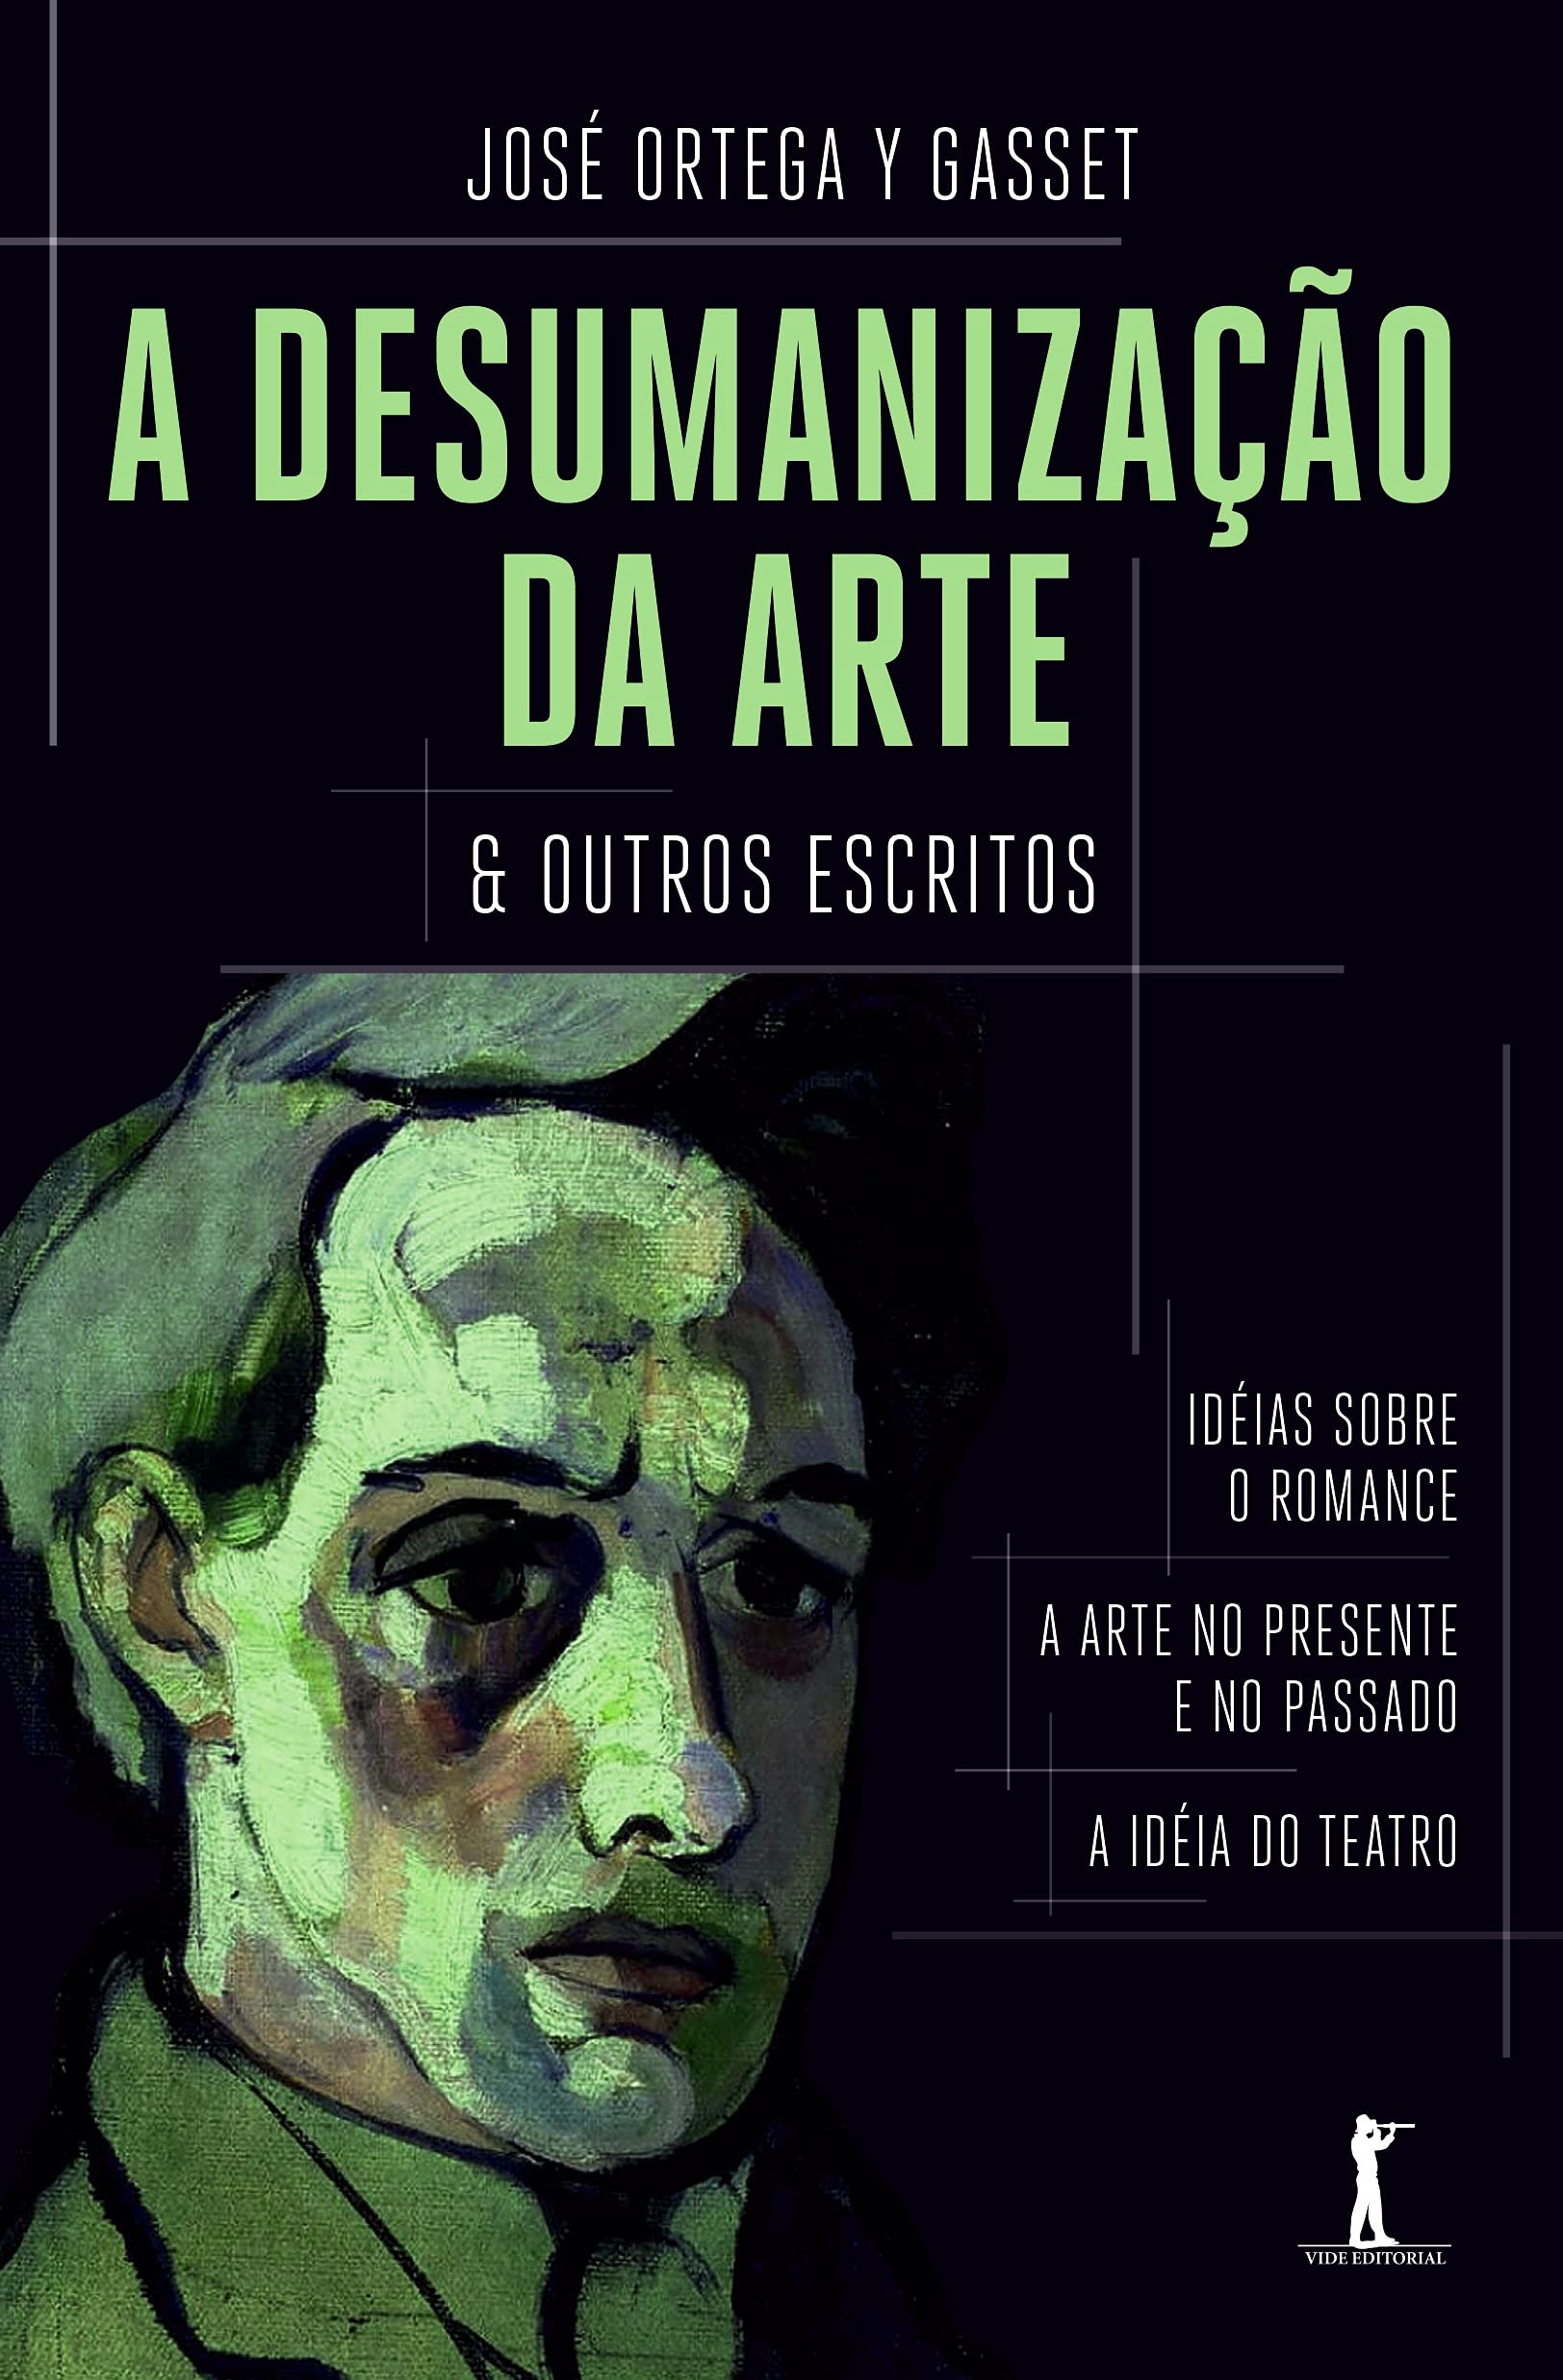 A desumanização da arte & outros escritos - José Ortega y Gasset